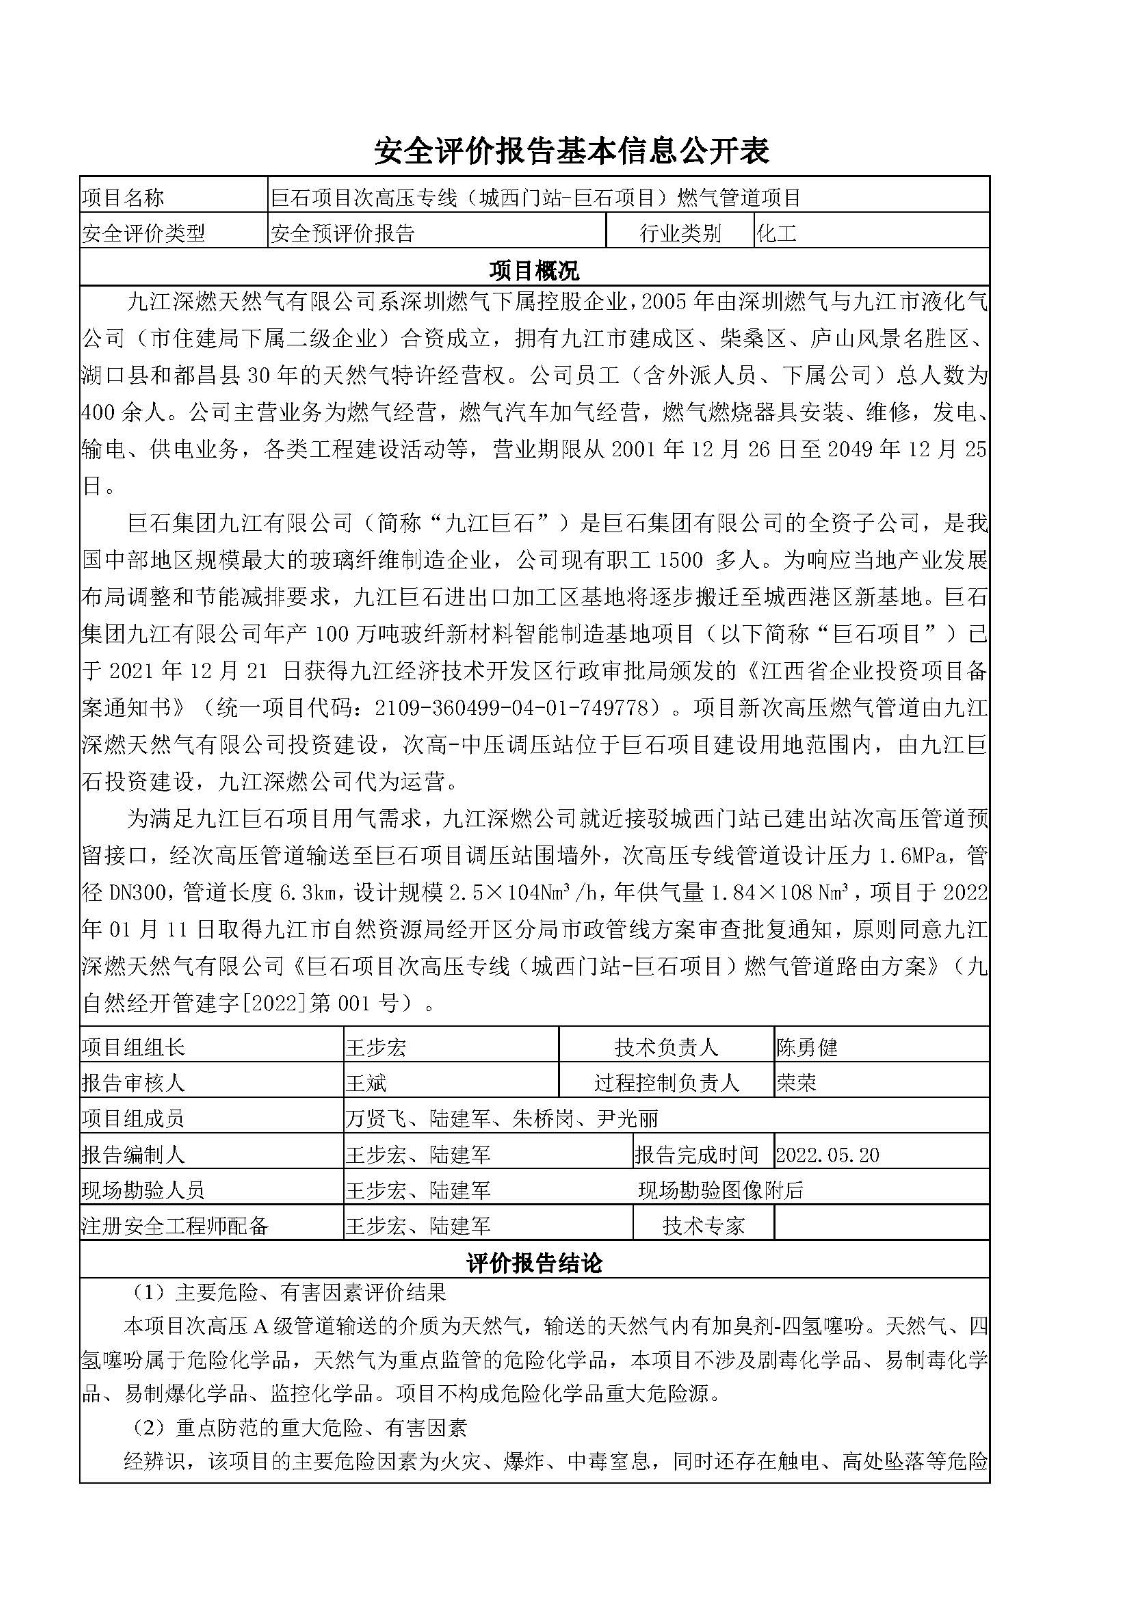 安全评价报告基本信息公开表（九江深燃天然气有限公司巨石项目）